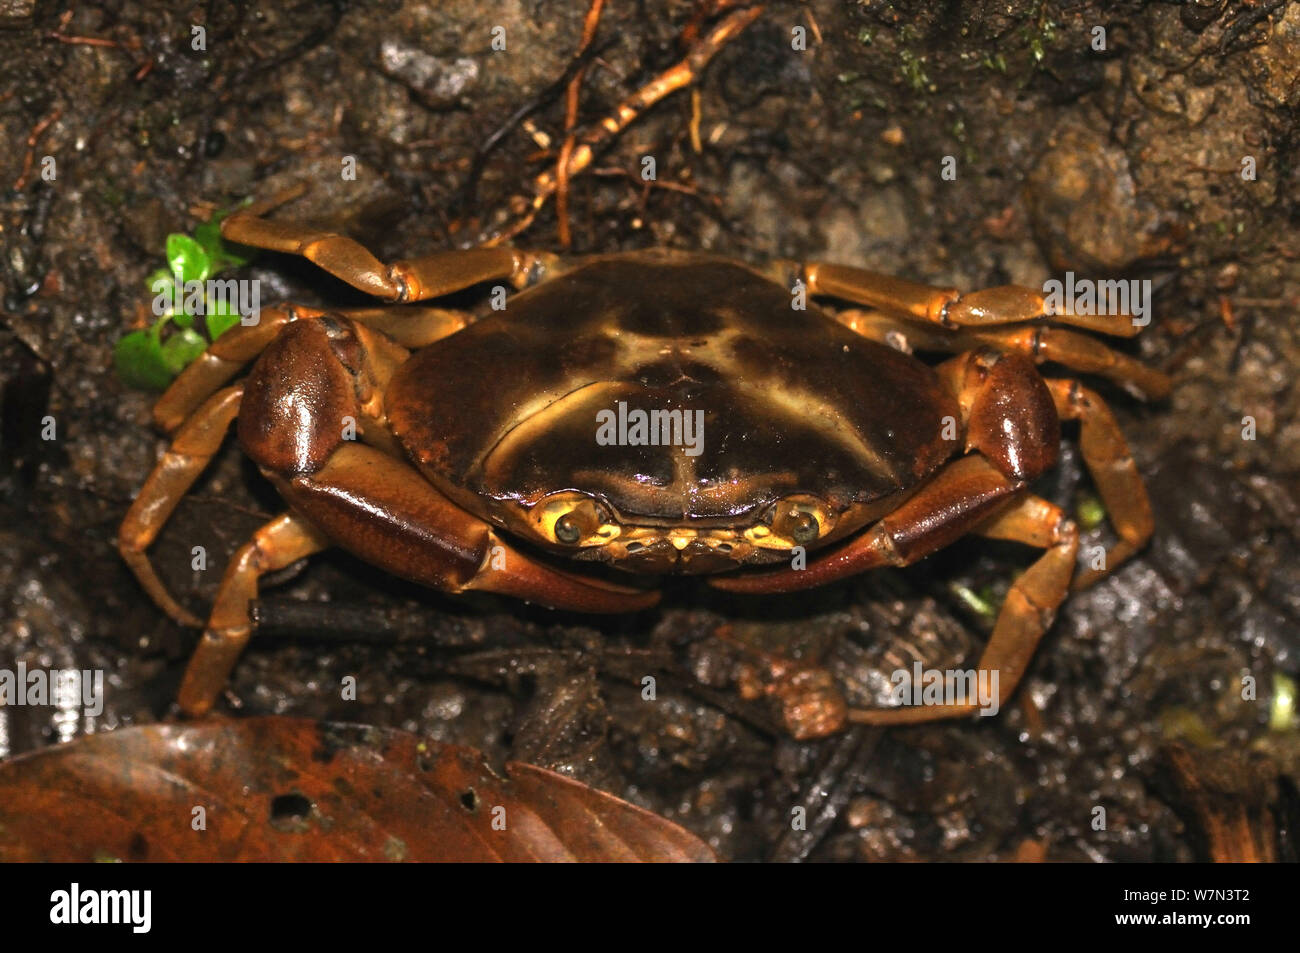 Crabe d'eau douce d'Amérique du Sud (Kingsleya sp.), Province de Manabi, Équateur Banque D'Images